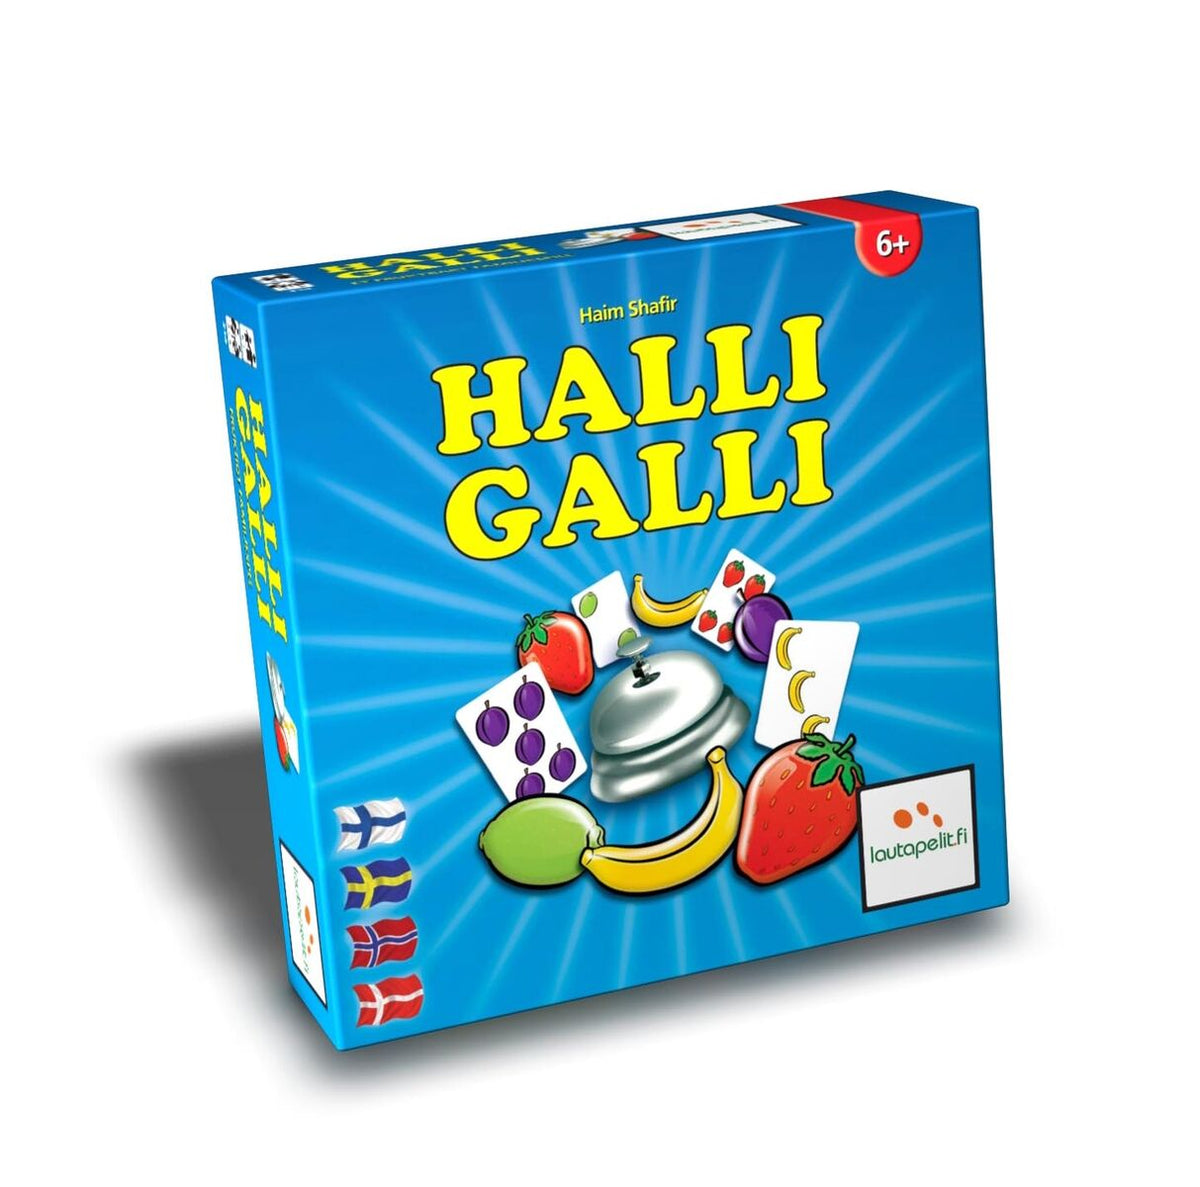 Halli Galli, børnespil, spil, brætspil